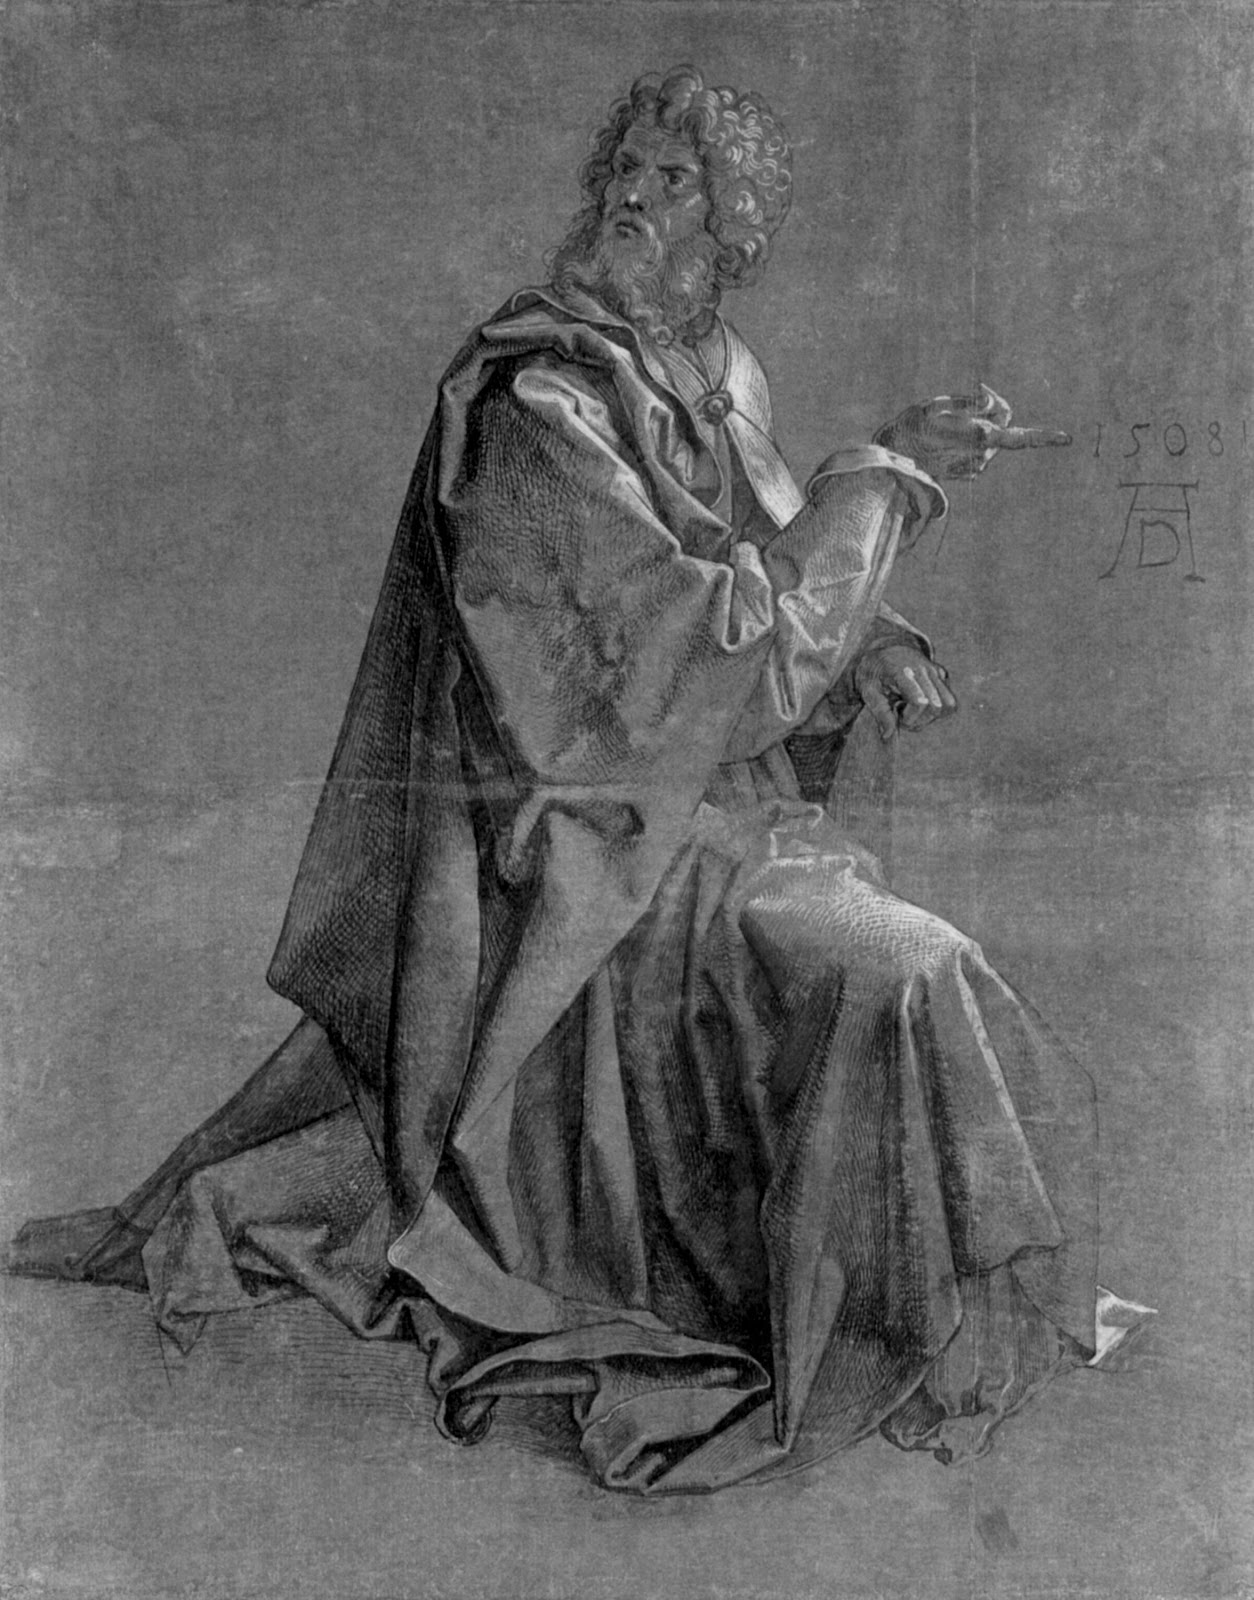 Albrecht+Durer-1471-1528 (133).jpg